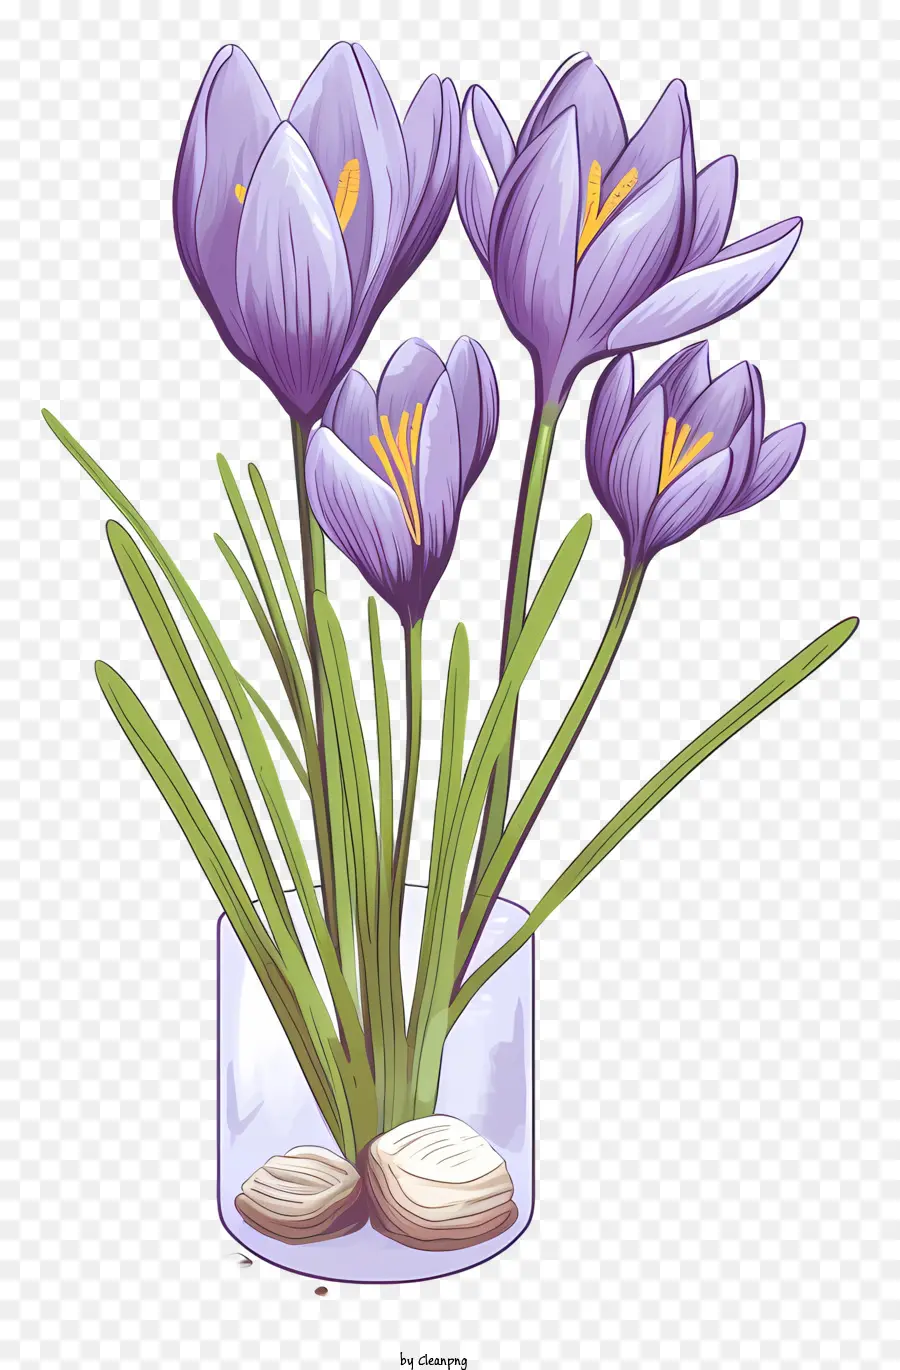 Vase Purple Crocusse Schwarzer Hintergrund Symmetrische Anordnung Square Format - Quadratische Vase mit lila Krokussen in symmetrischer Anordnung